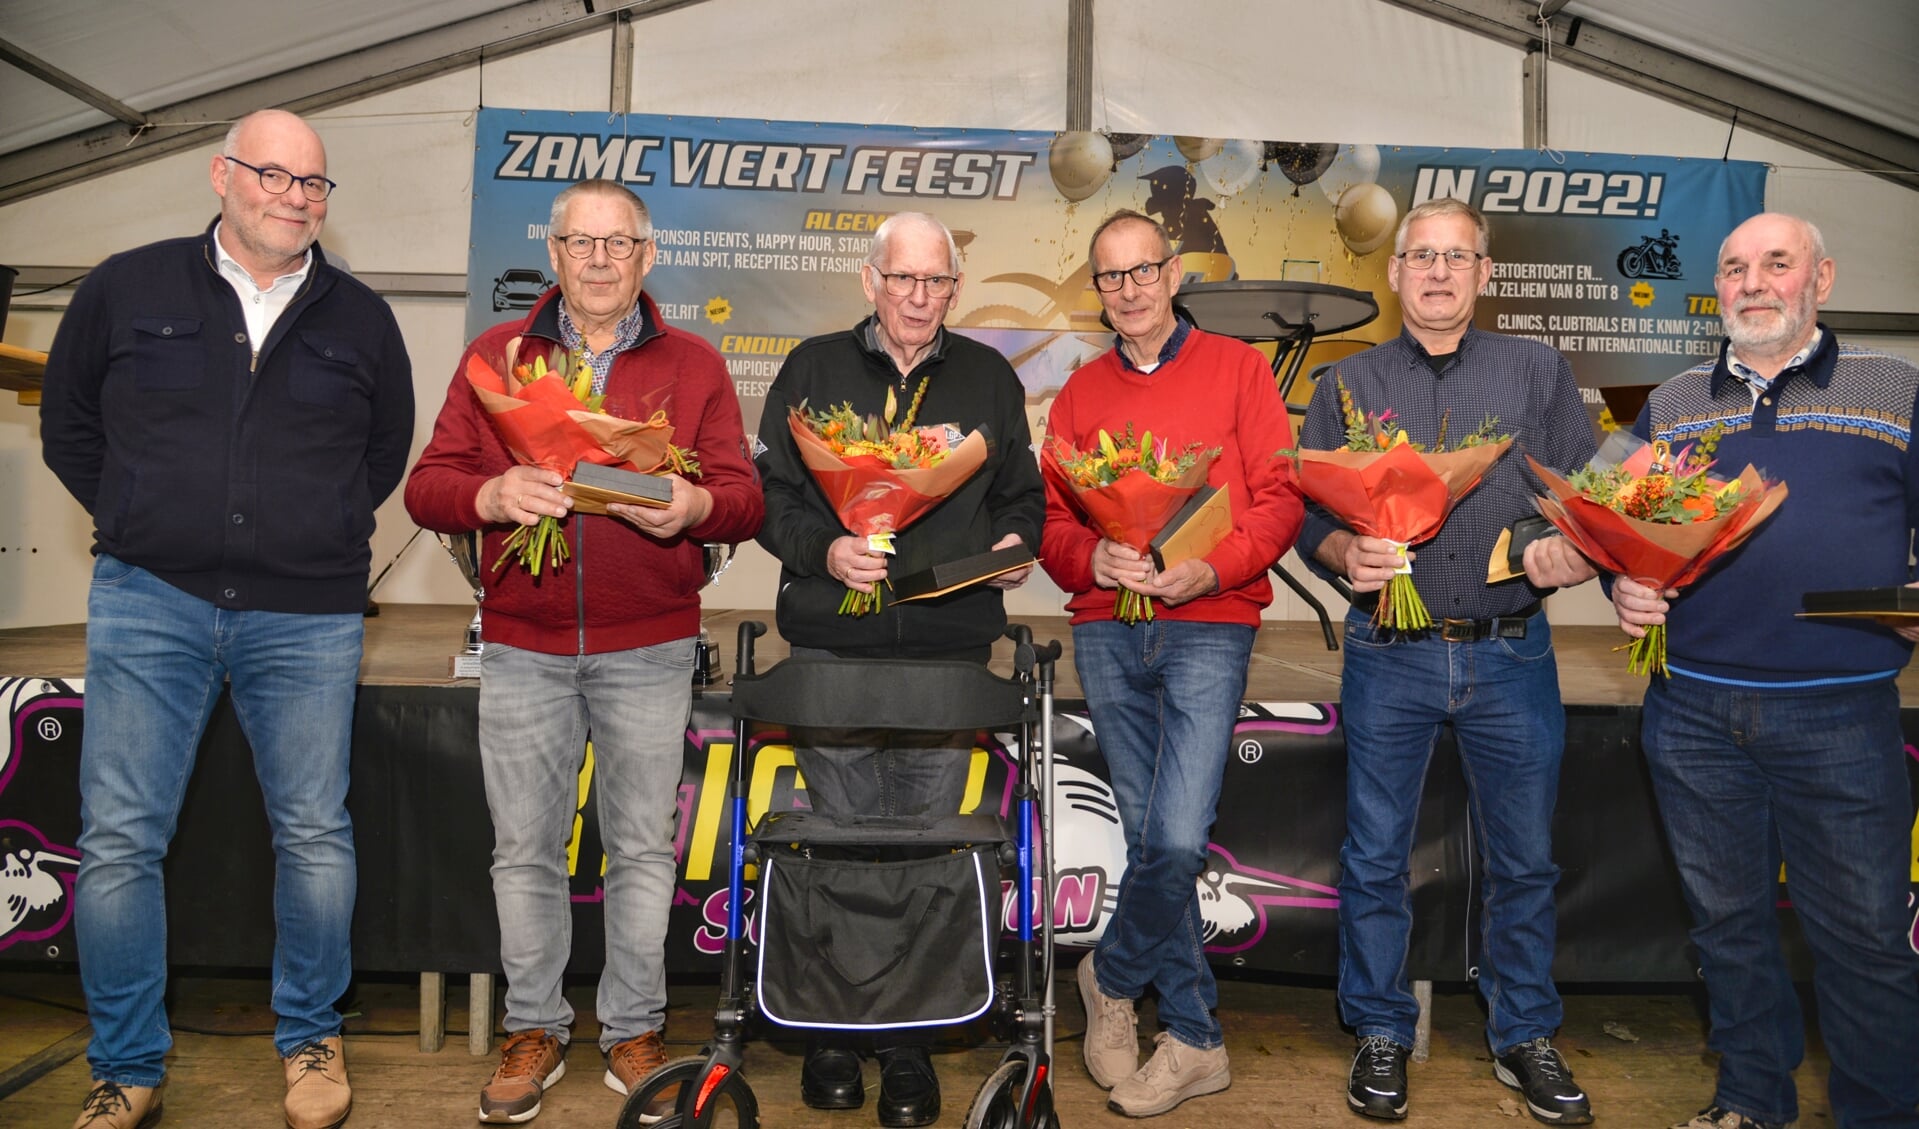 Eddy Bieleman, Jan Oosterink, Bennie Freriks, Dick Bulten en Bennie Wolsink gehuldigd met bloemen en lidmaatschap van de ZAMC. Foto: Gerrie Evers